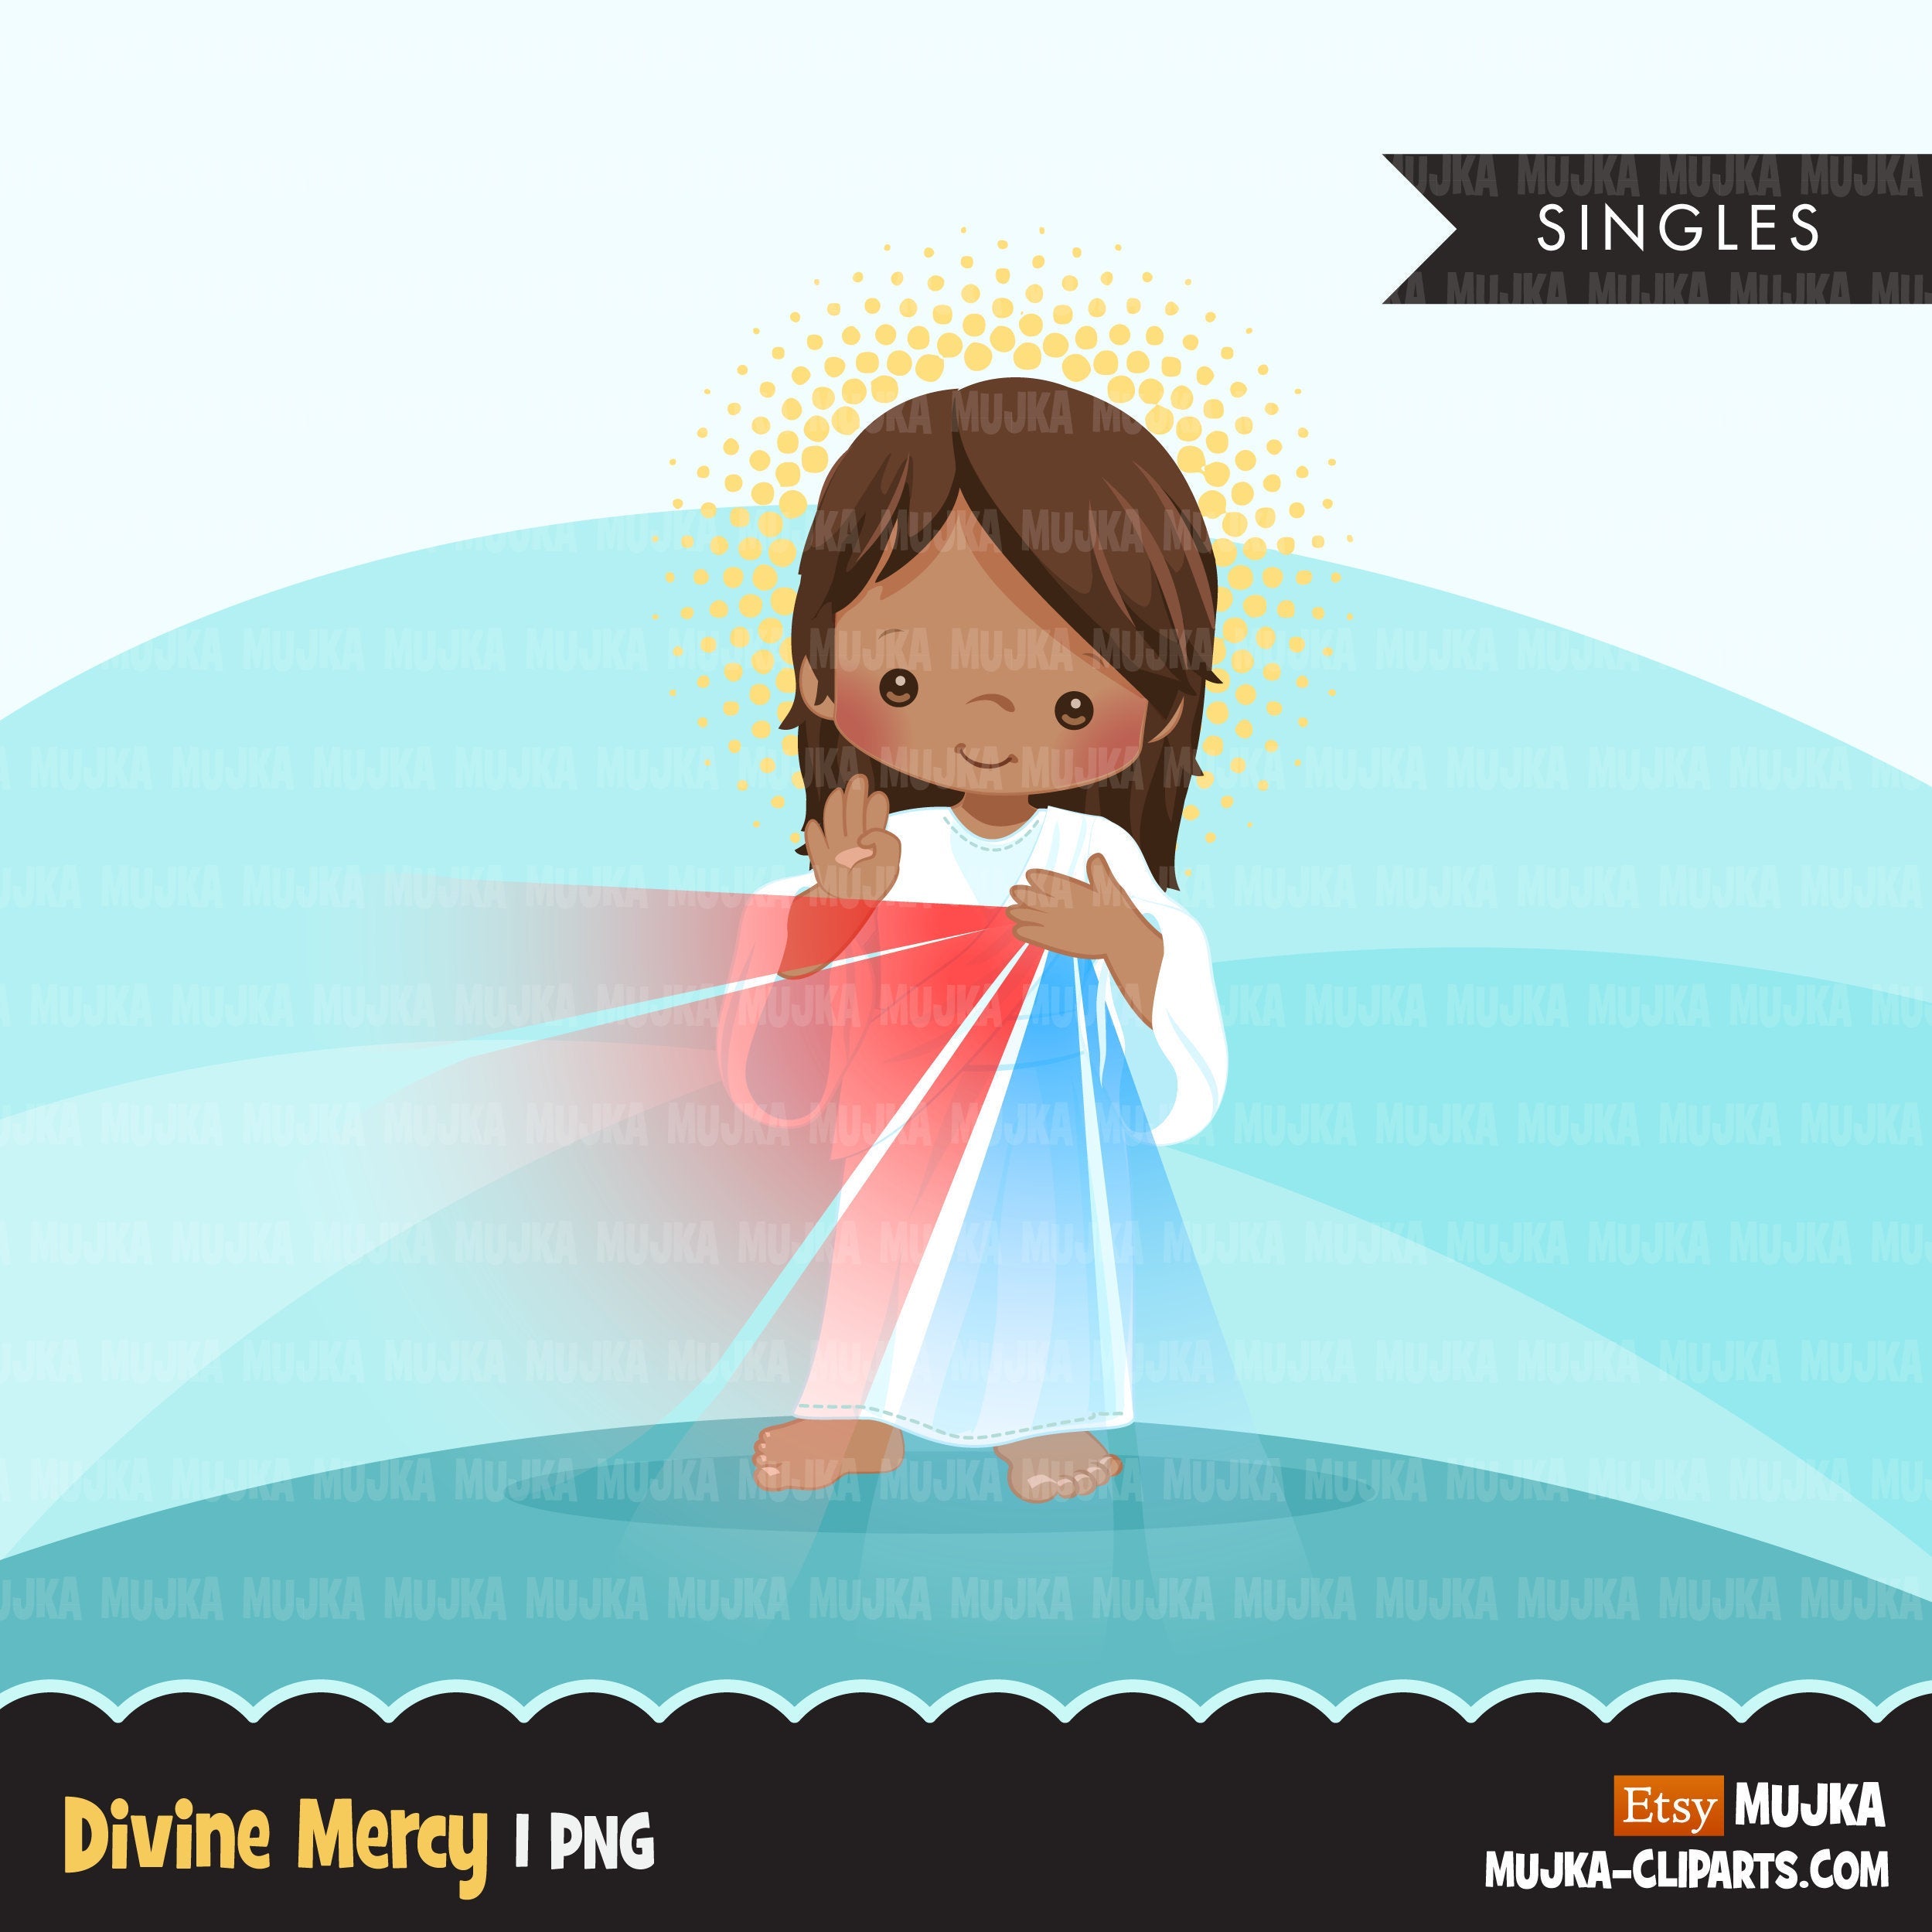 divine mercy image clipart escalier